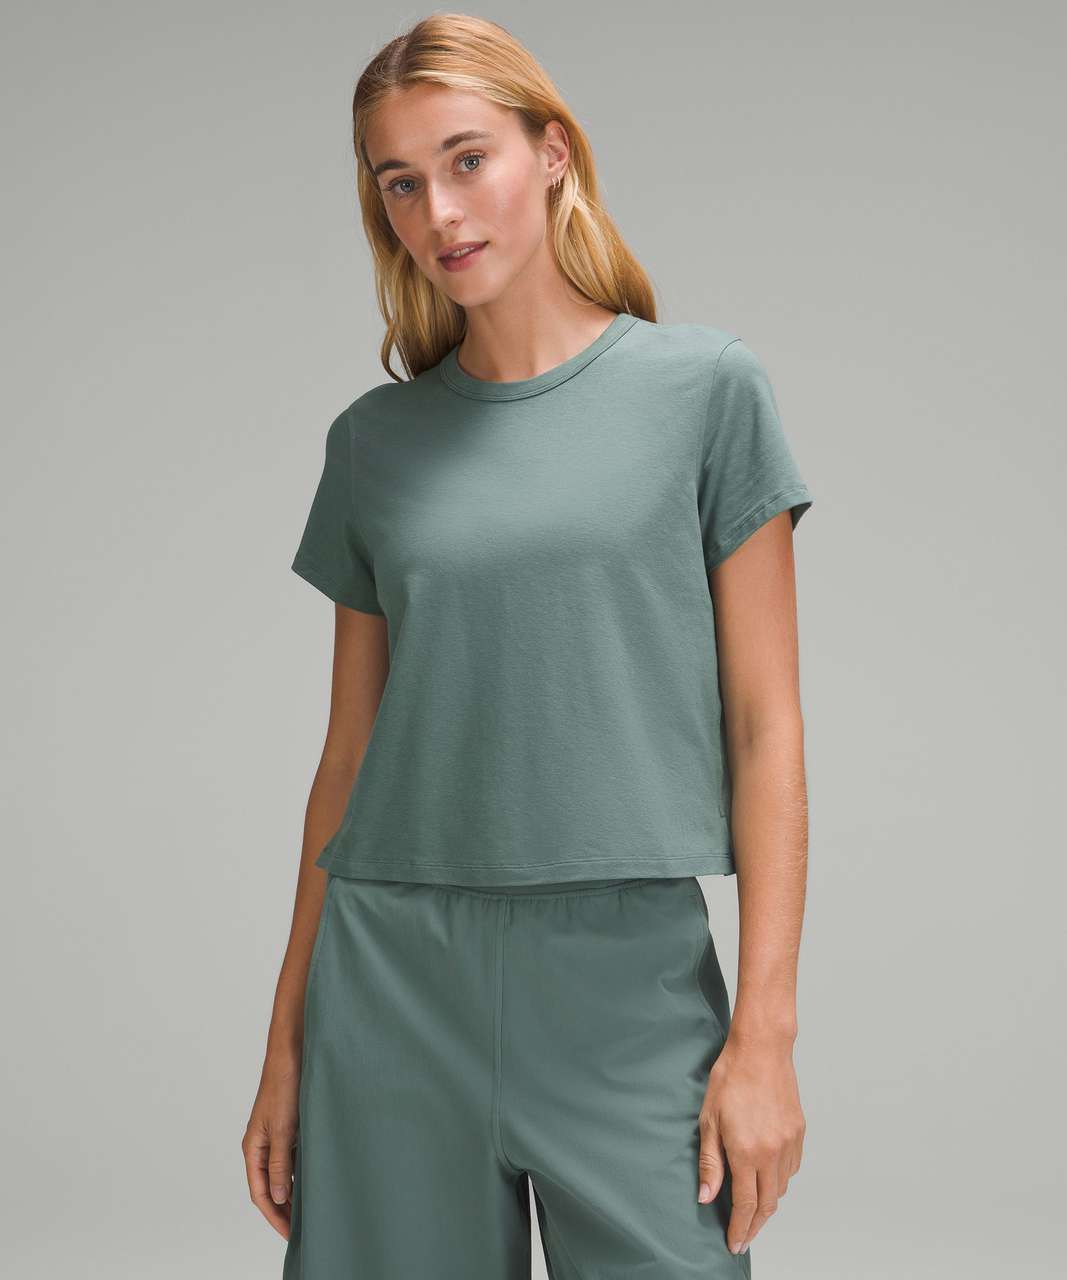 Lululemon Classic-Fit Cotton-Blend T-Shirt - Medium Forest